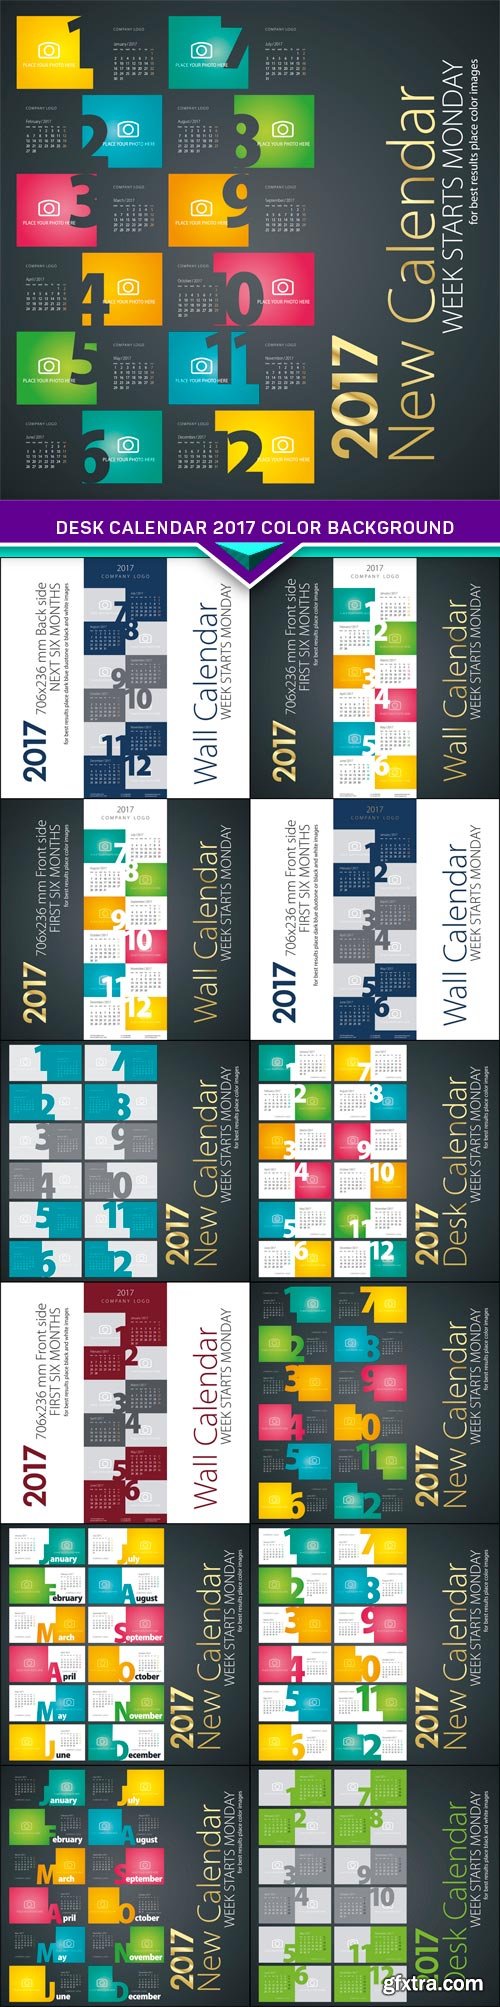 Desk calendar 2017 color background 13X EPS